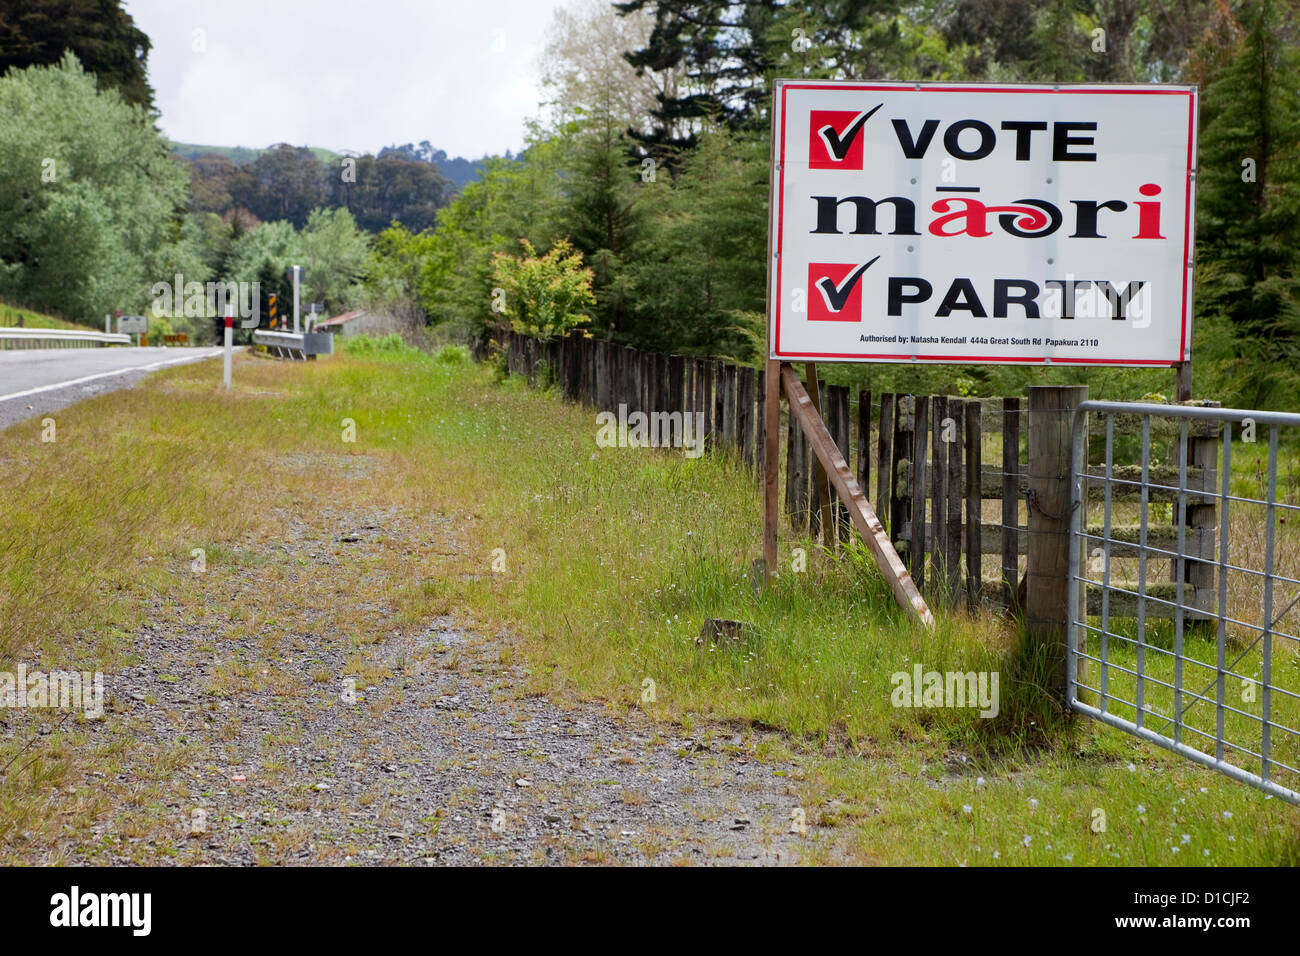 Politisches Plakat für Maori politische Partei neben Autobahn, Nordinsel, Neuseeland. Stockfoto